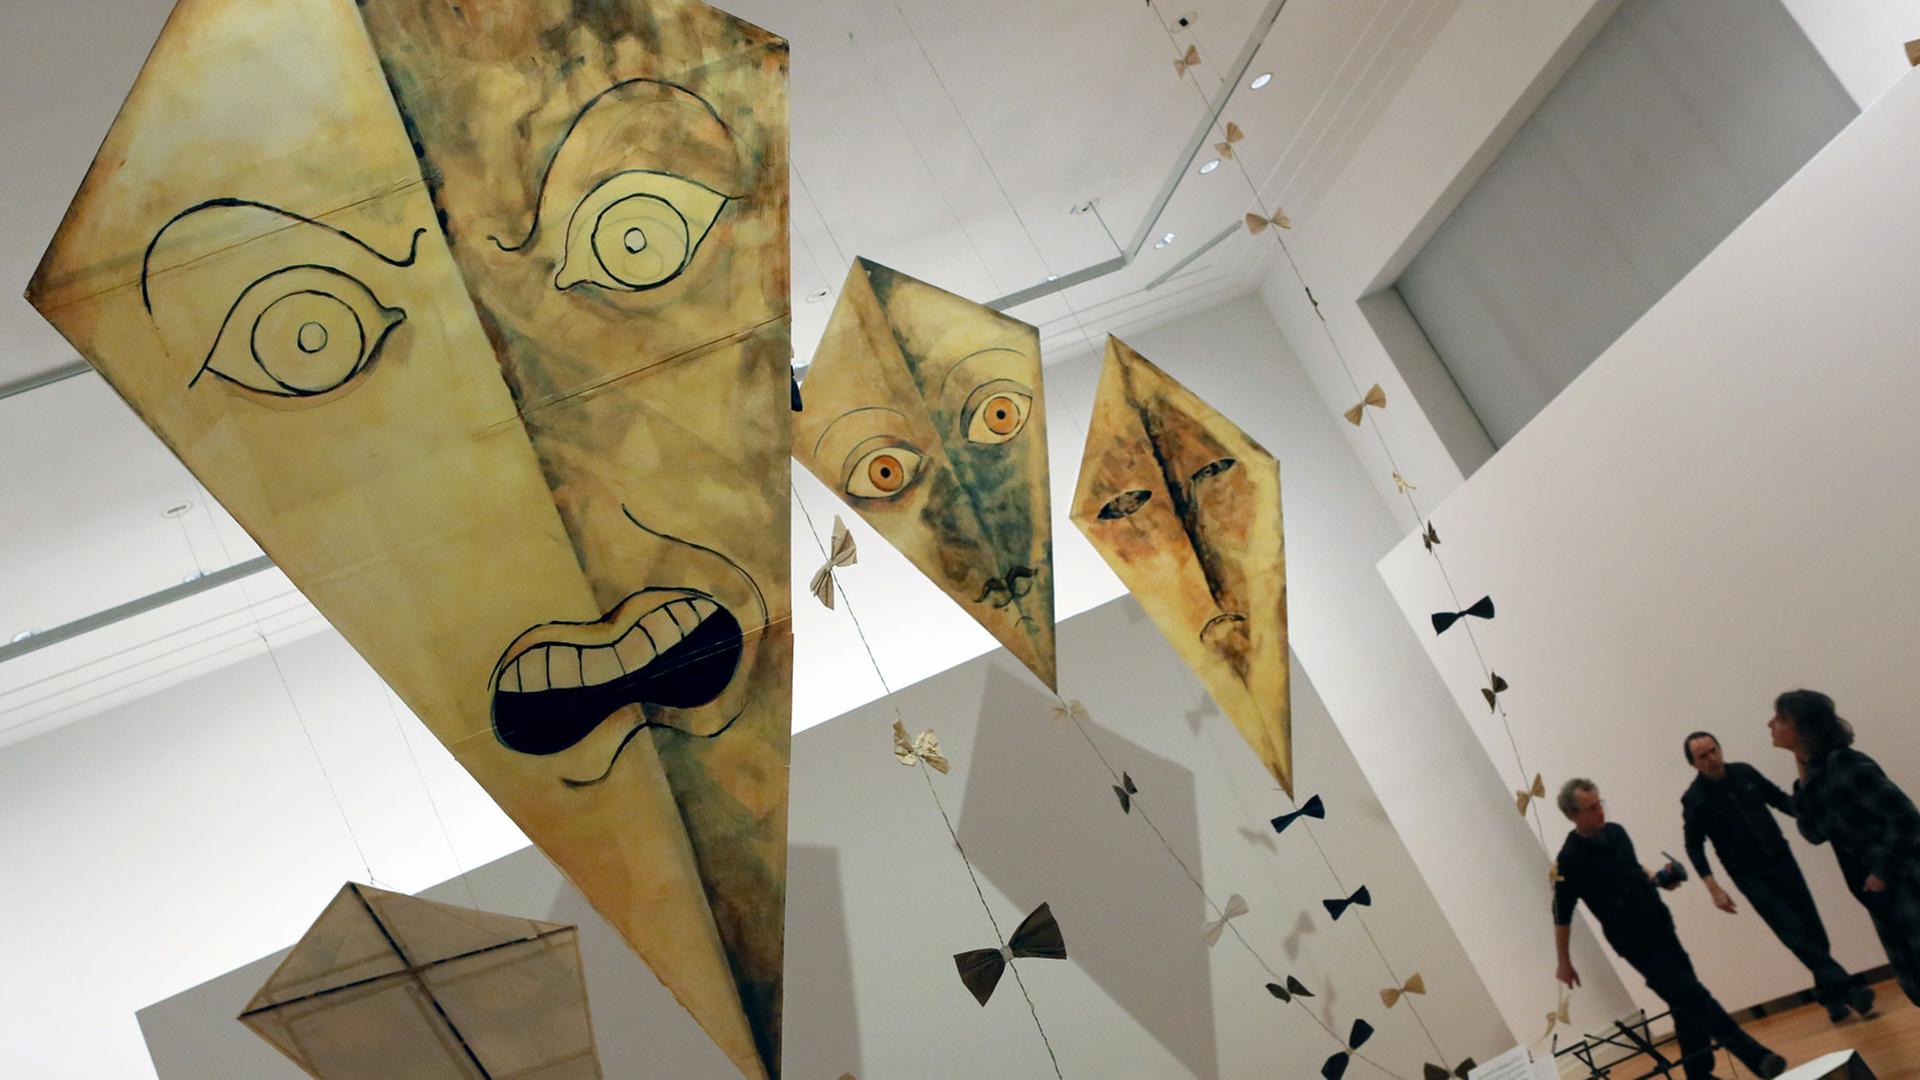 Die Installation "Wenn Diktatoren wüten" (2013) von Michal Helfman ist am 26.03.2015 im Martin-Gropius-Bau in Berlin in der Ausstellung "Jahrhundertzeichen" des Tel Aviv Museums zu sehen.